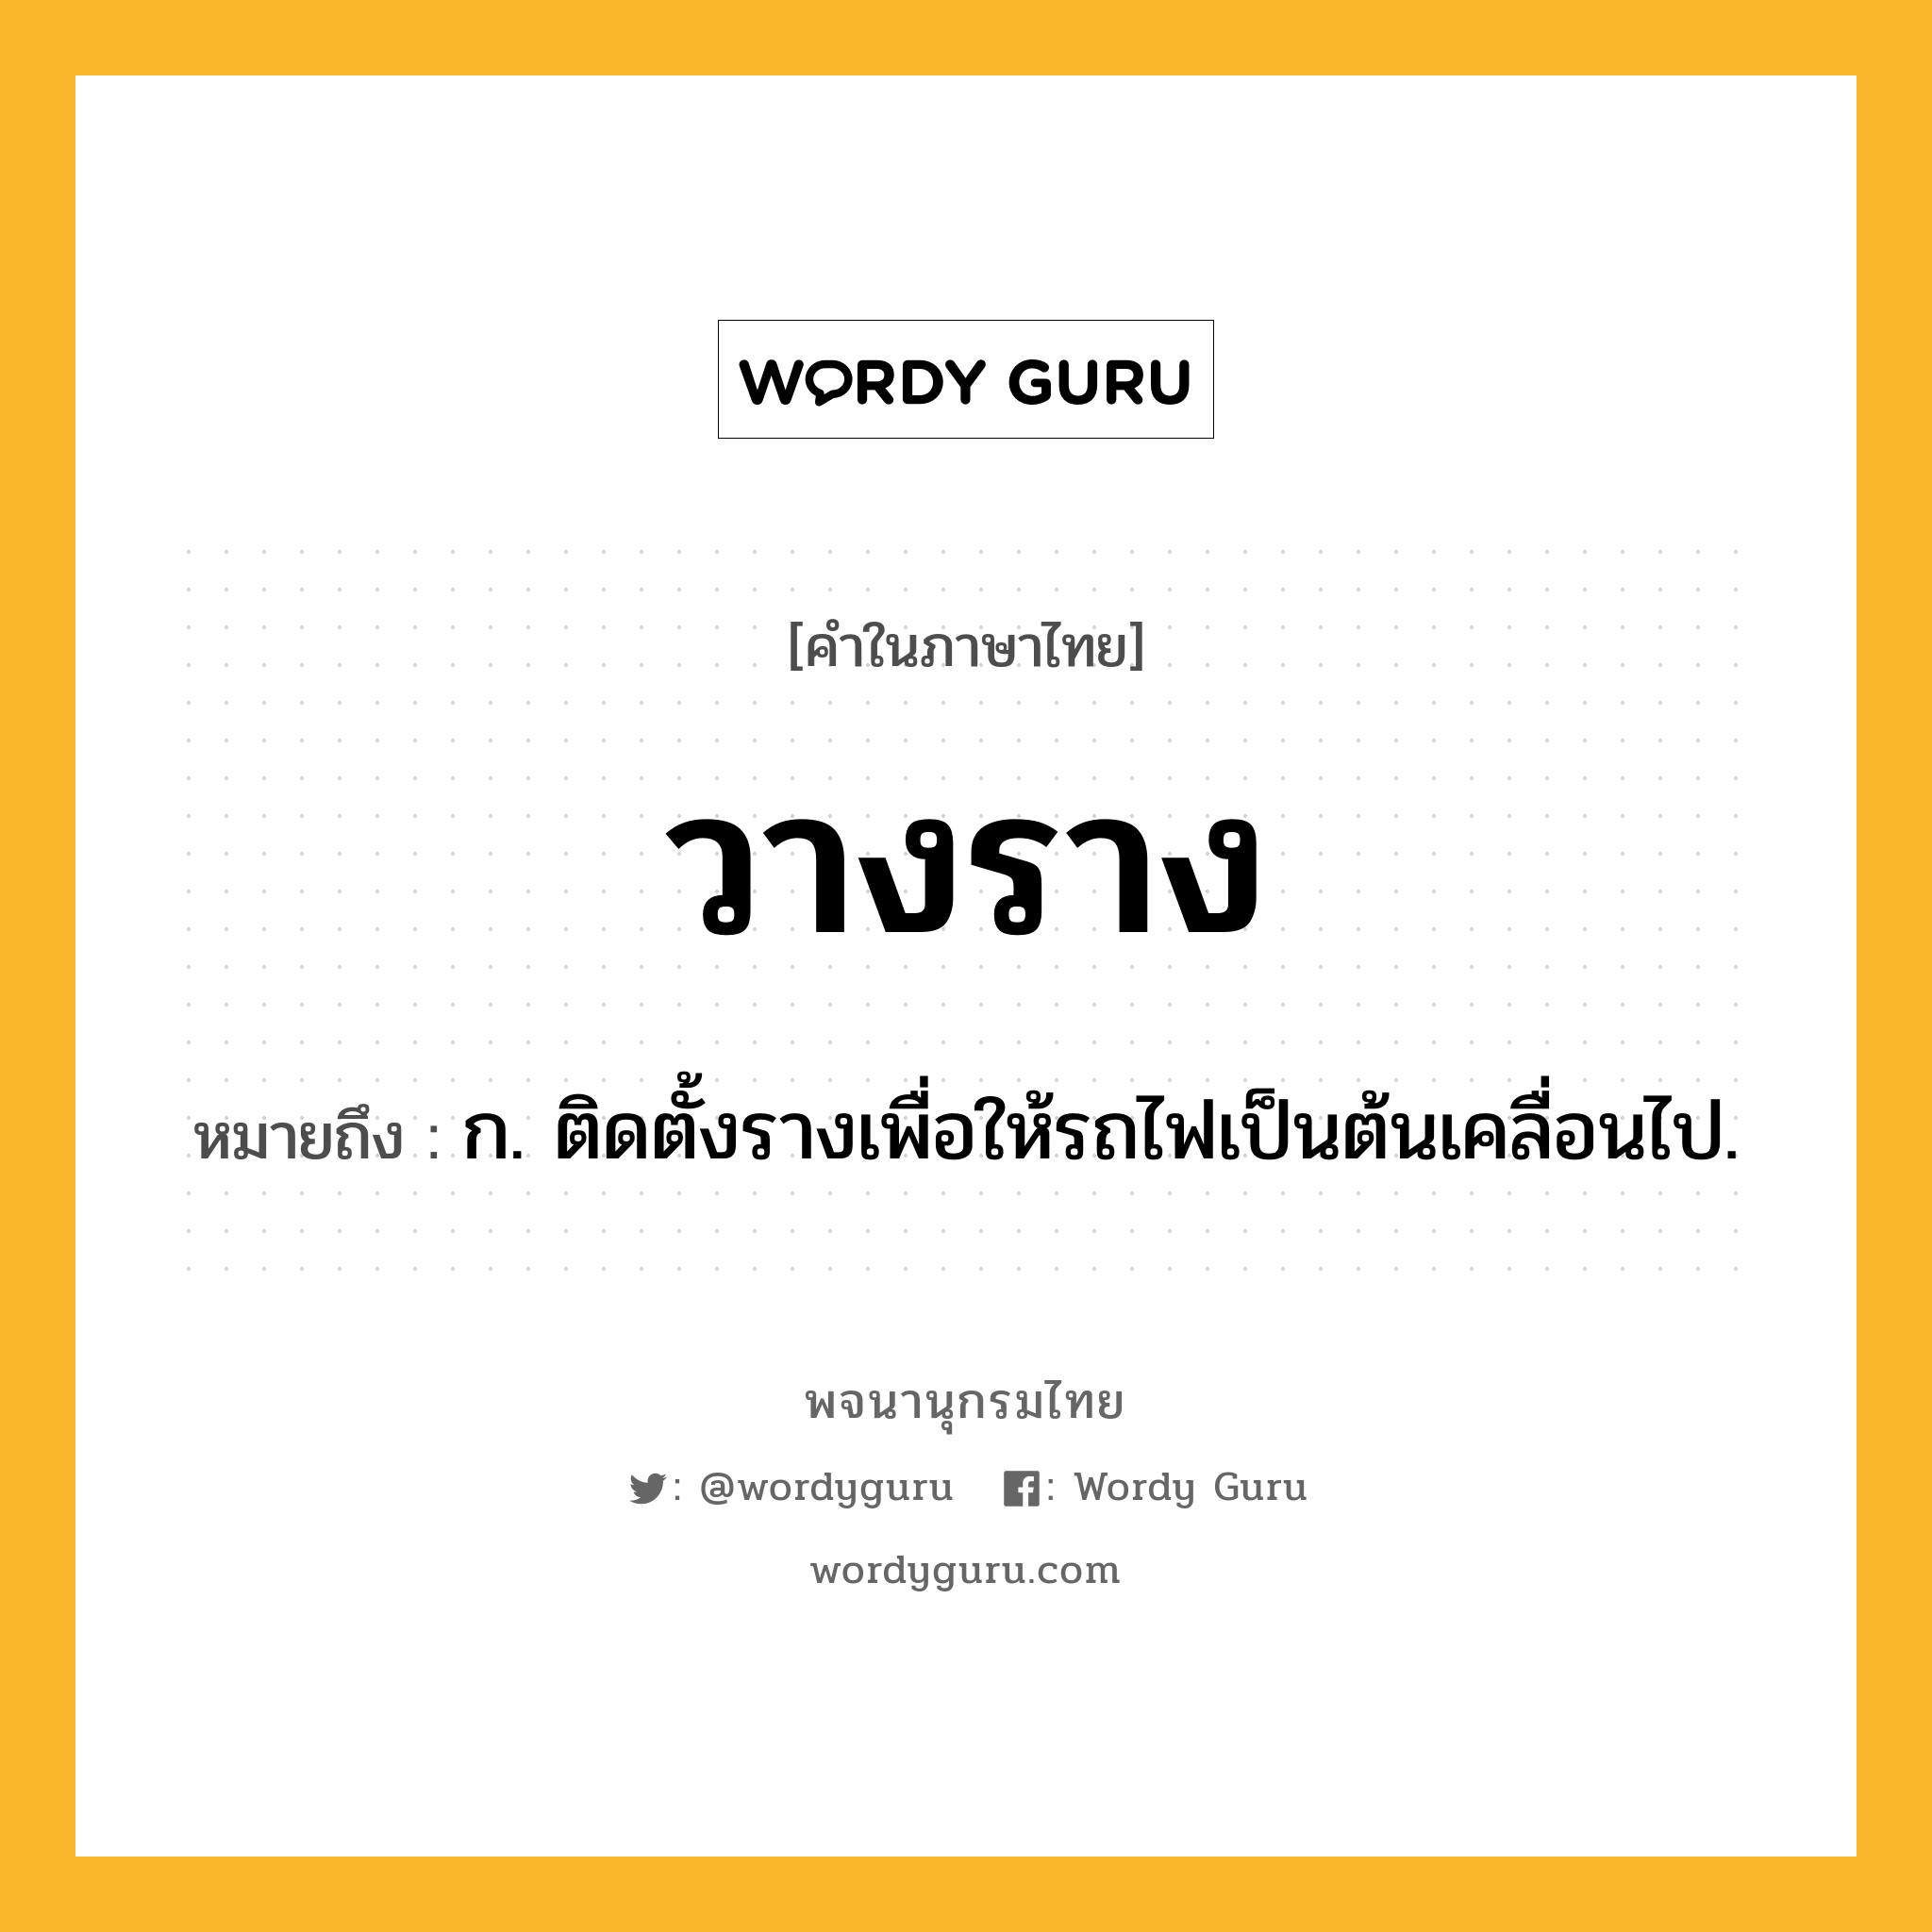 วางราง หมายถึงอะไร?, คำในภาษาไทย วางราง หมายถึง ก. ติดตั้งรางเพื่อให้รถไฟเป็นต้นเคลื่อนไป.